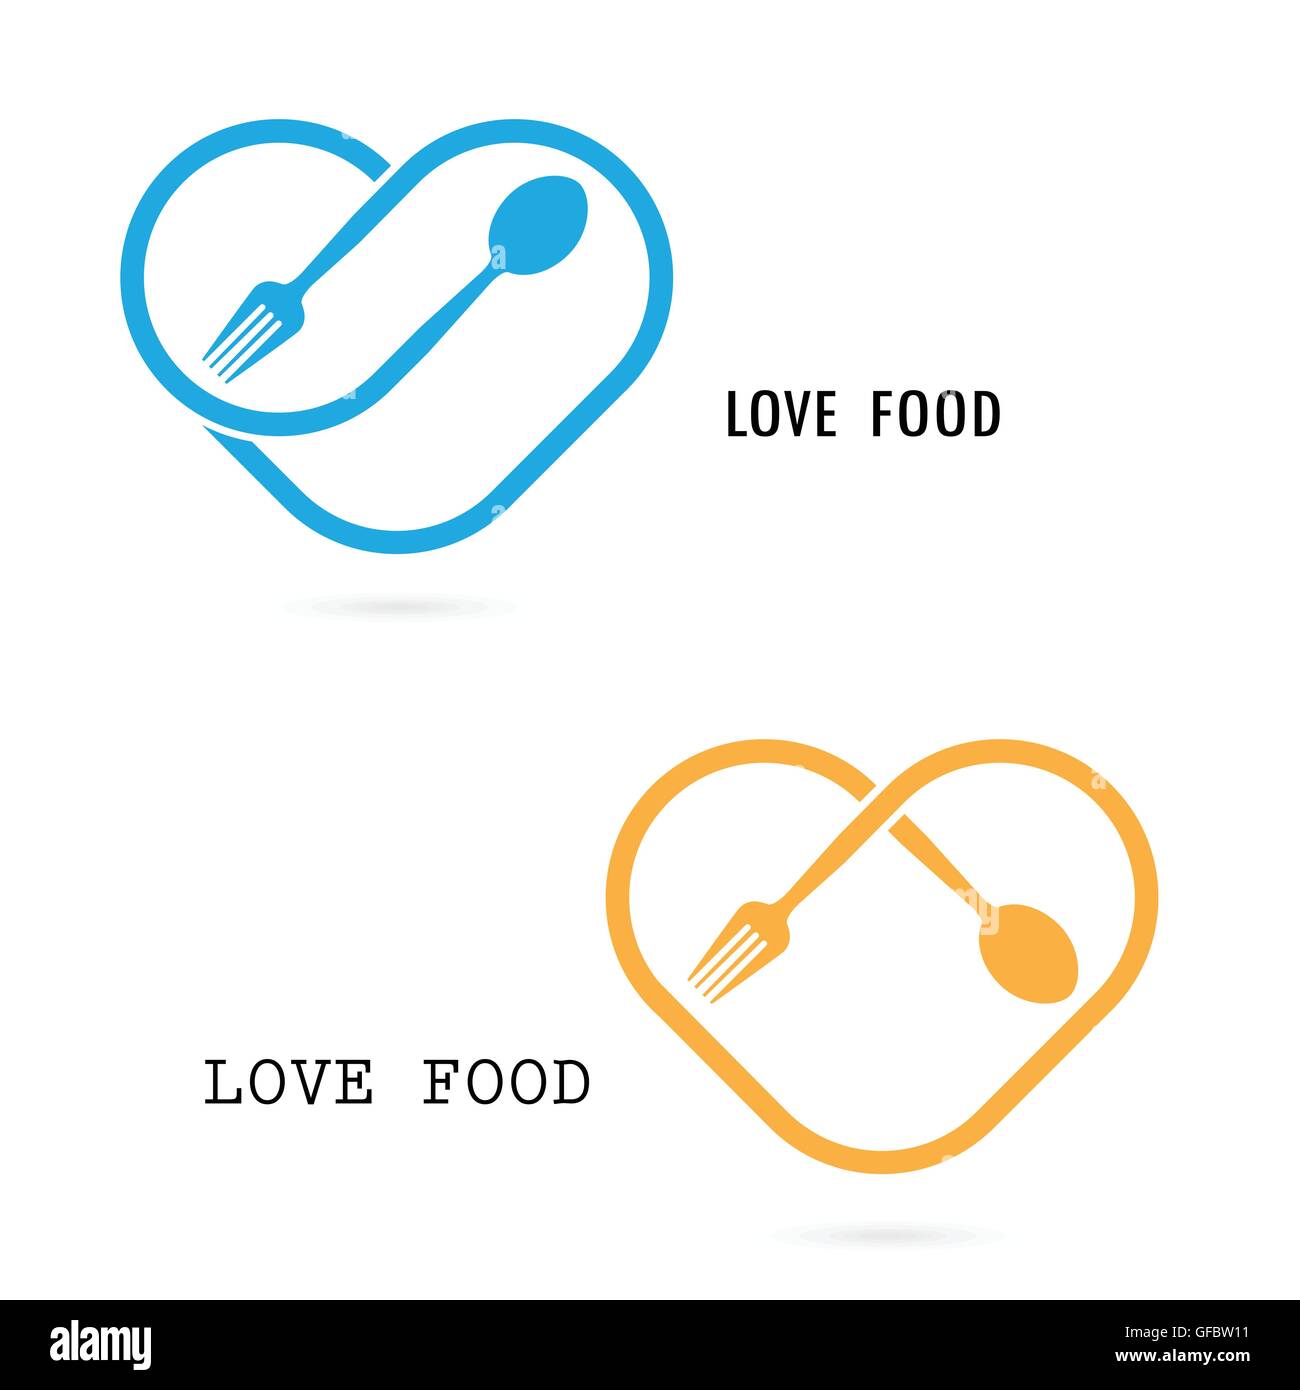 Löffel, Gabel und Herz-Form-Logo. Liebe Essen Logo.Restaurant-Menü-Symbol. Ernährung und gesundes Kochen Konzept. Vektor-Logo-design Stock Vektor